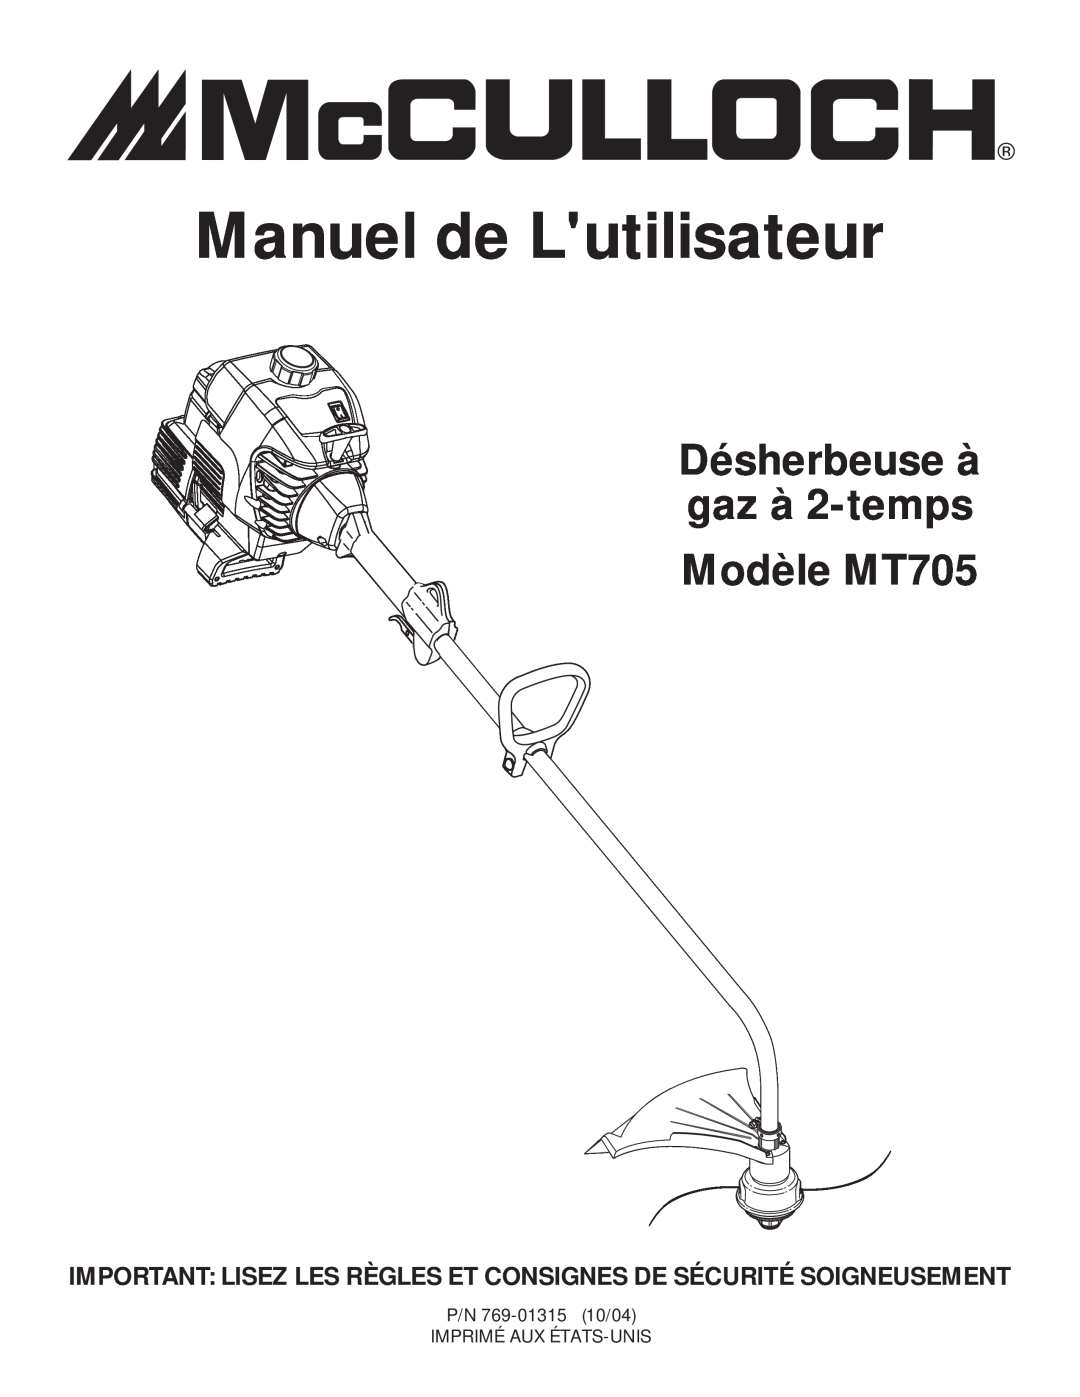 McCulloch manual Manuel de Lutilisateur, Désherbeuse à gaz à 2-temps Modèle MT705 